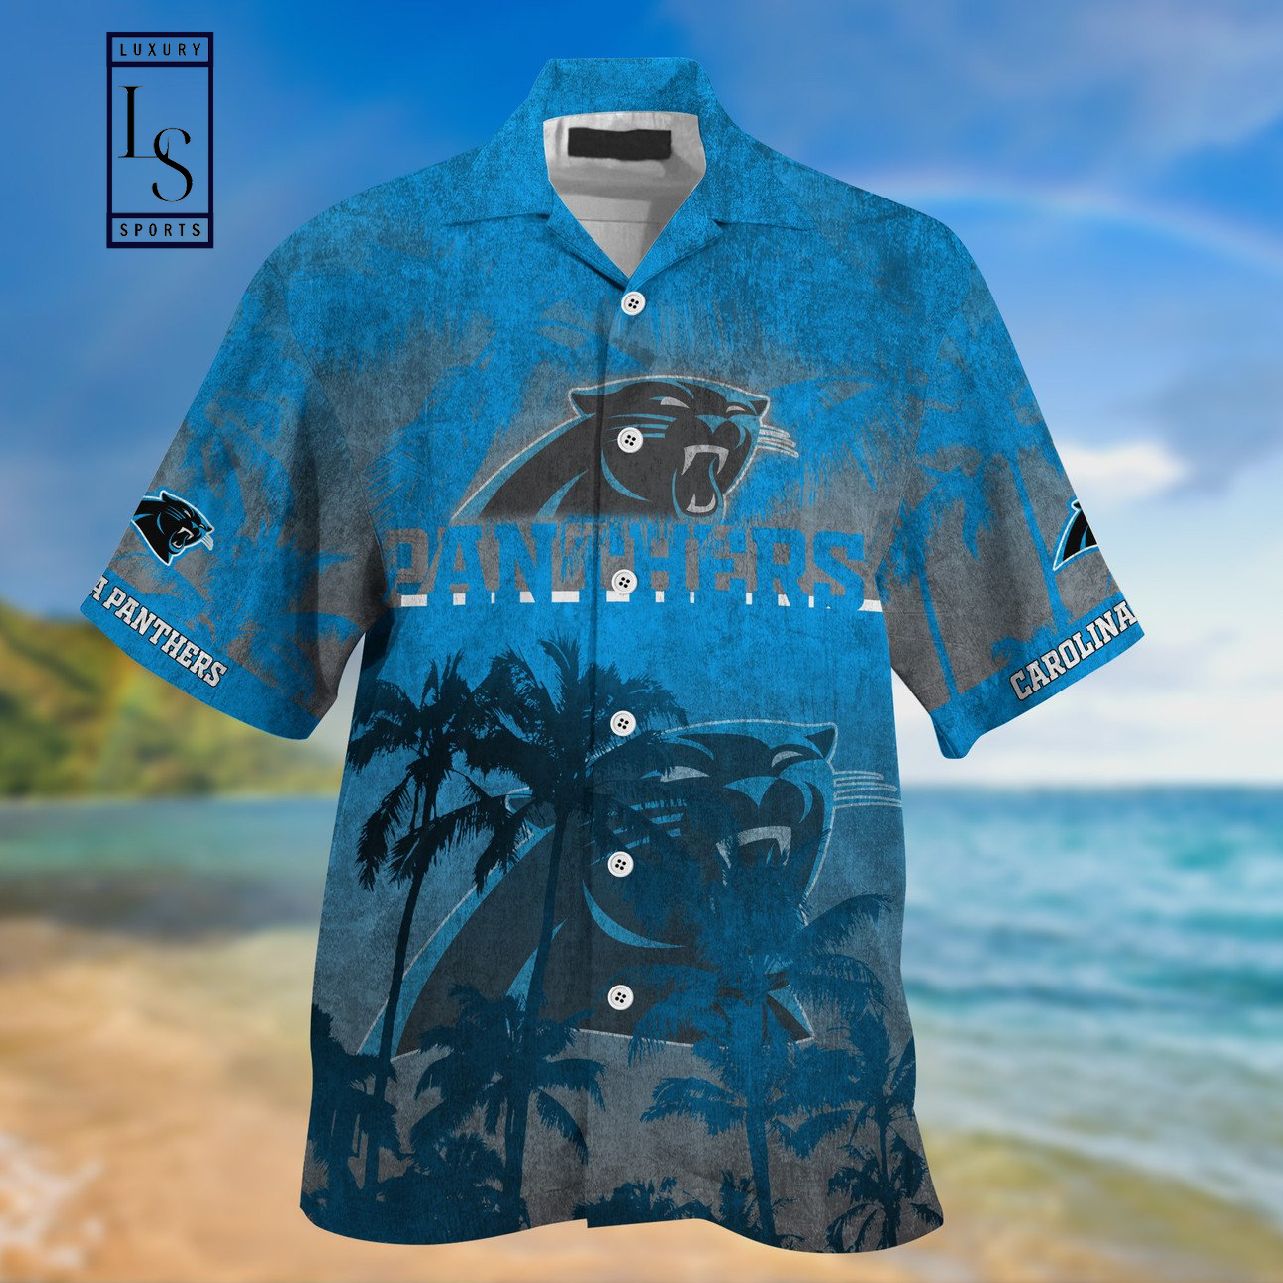 Carolina Panthers footballs club Hawaiian Shirt